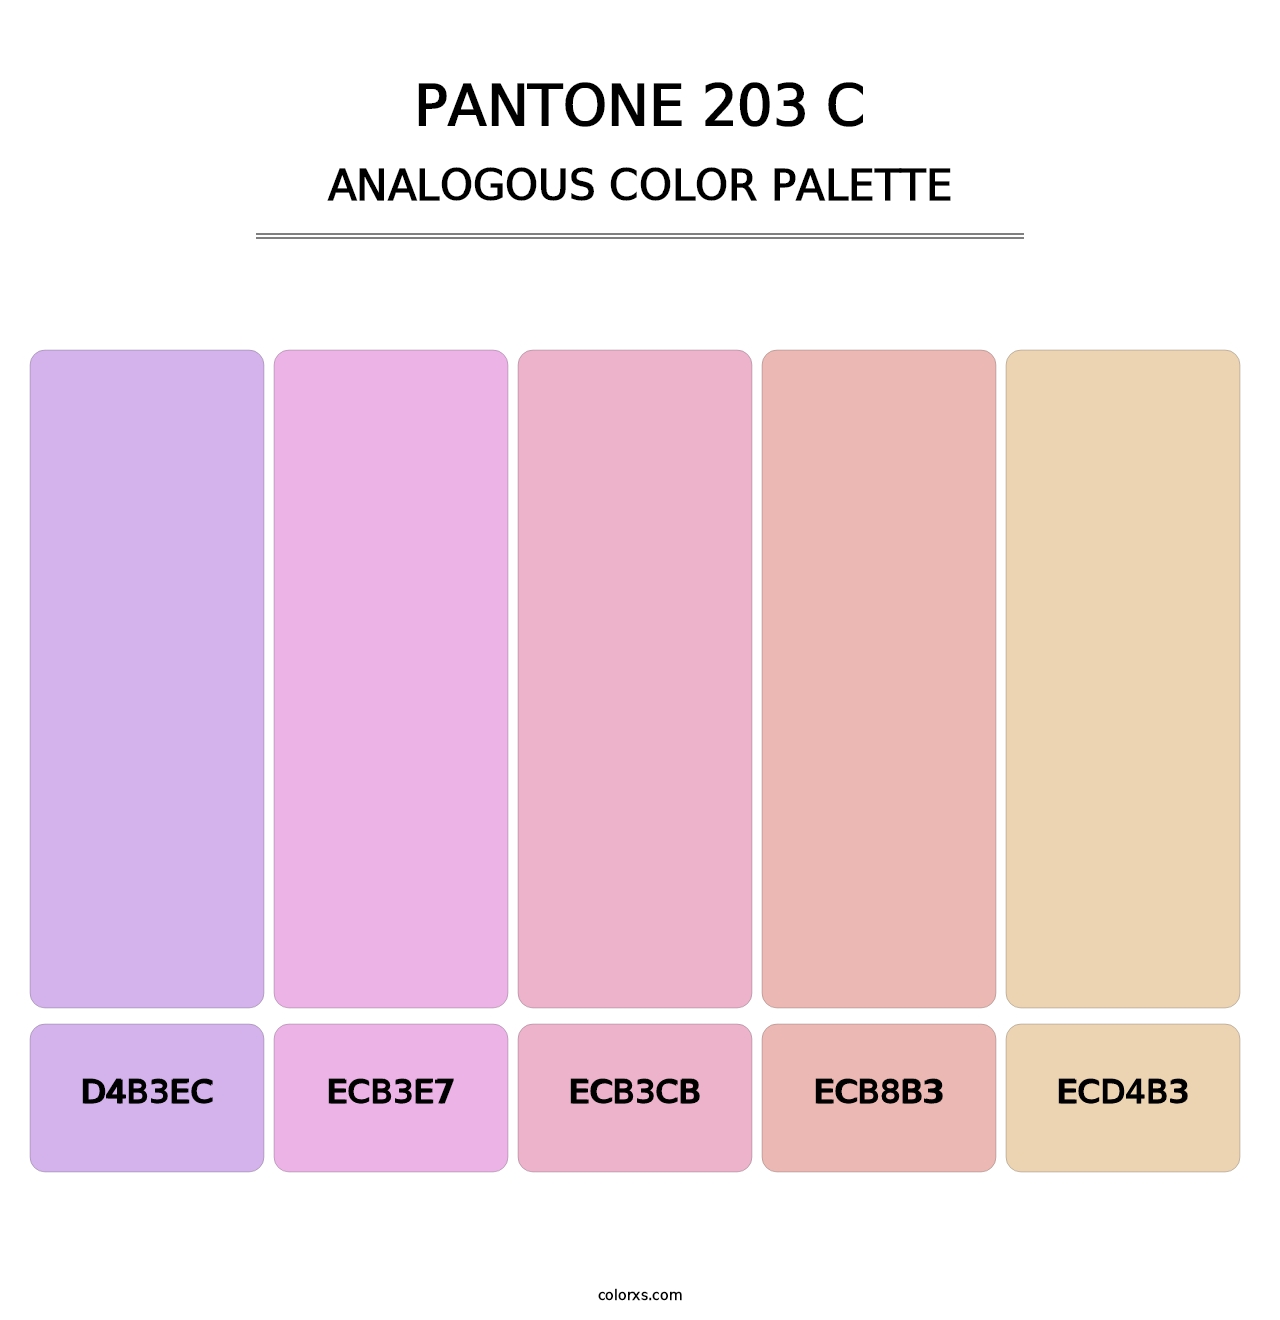 PANTONE 203 C - Analogous Color Palette